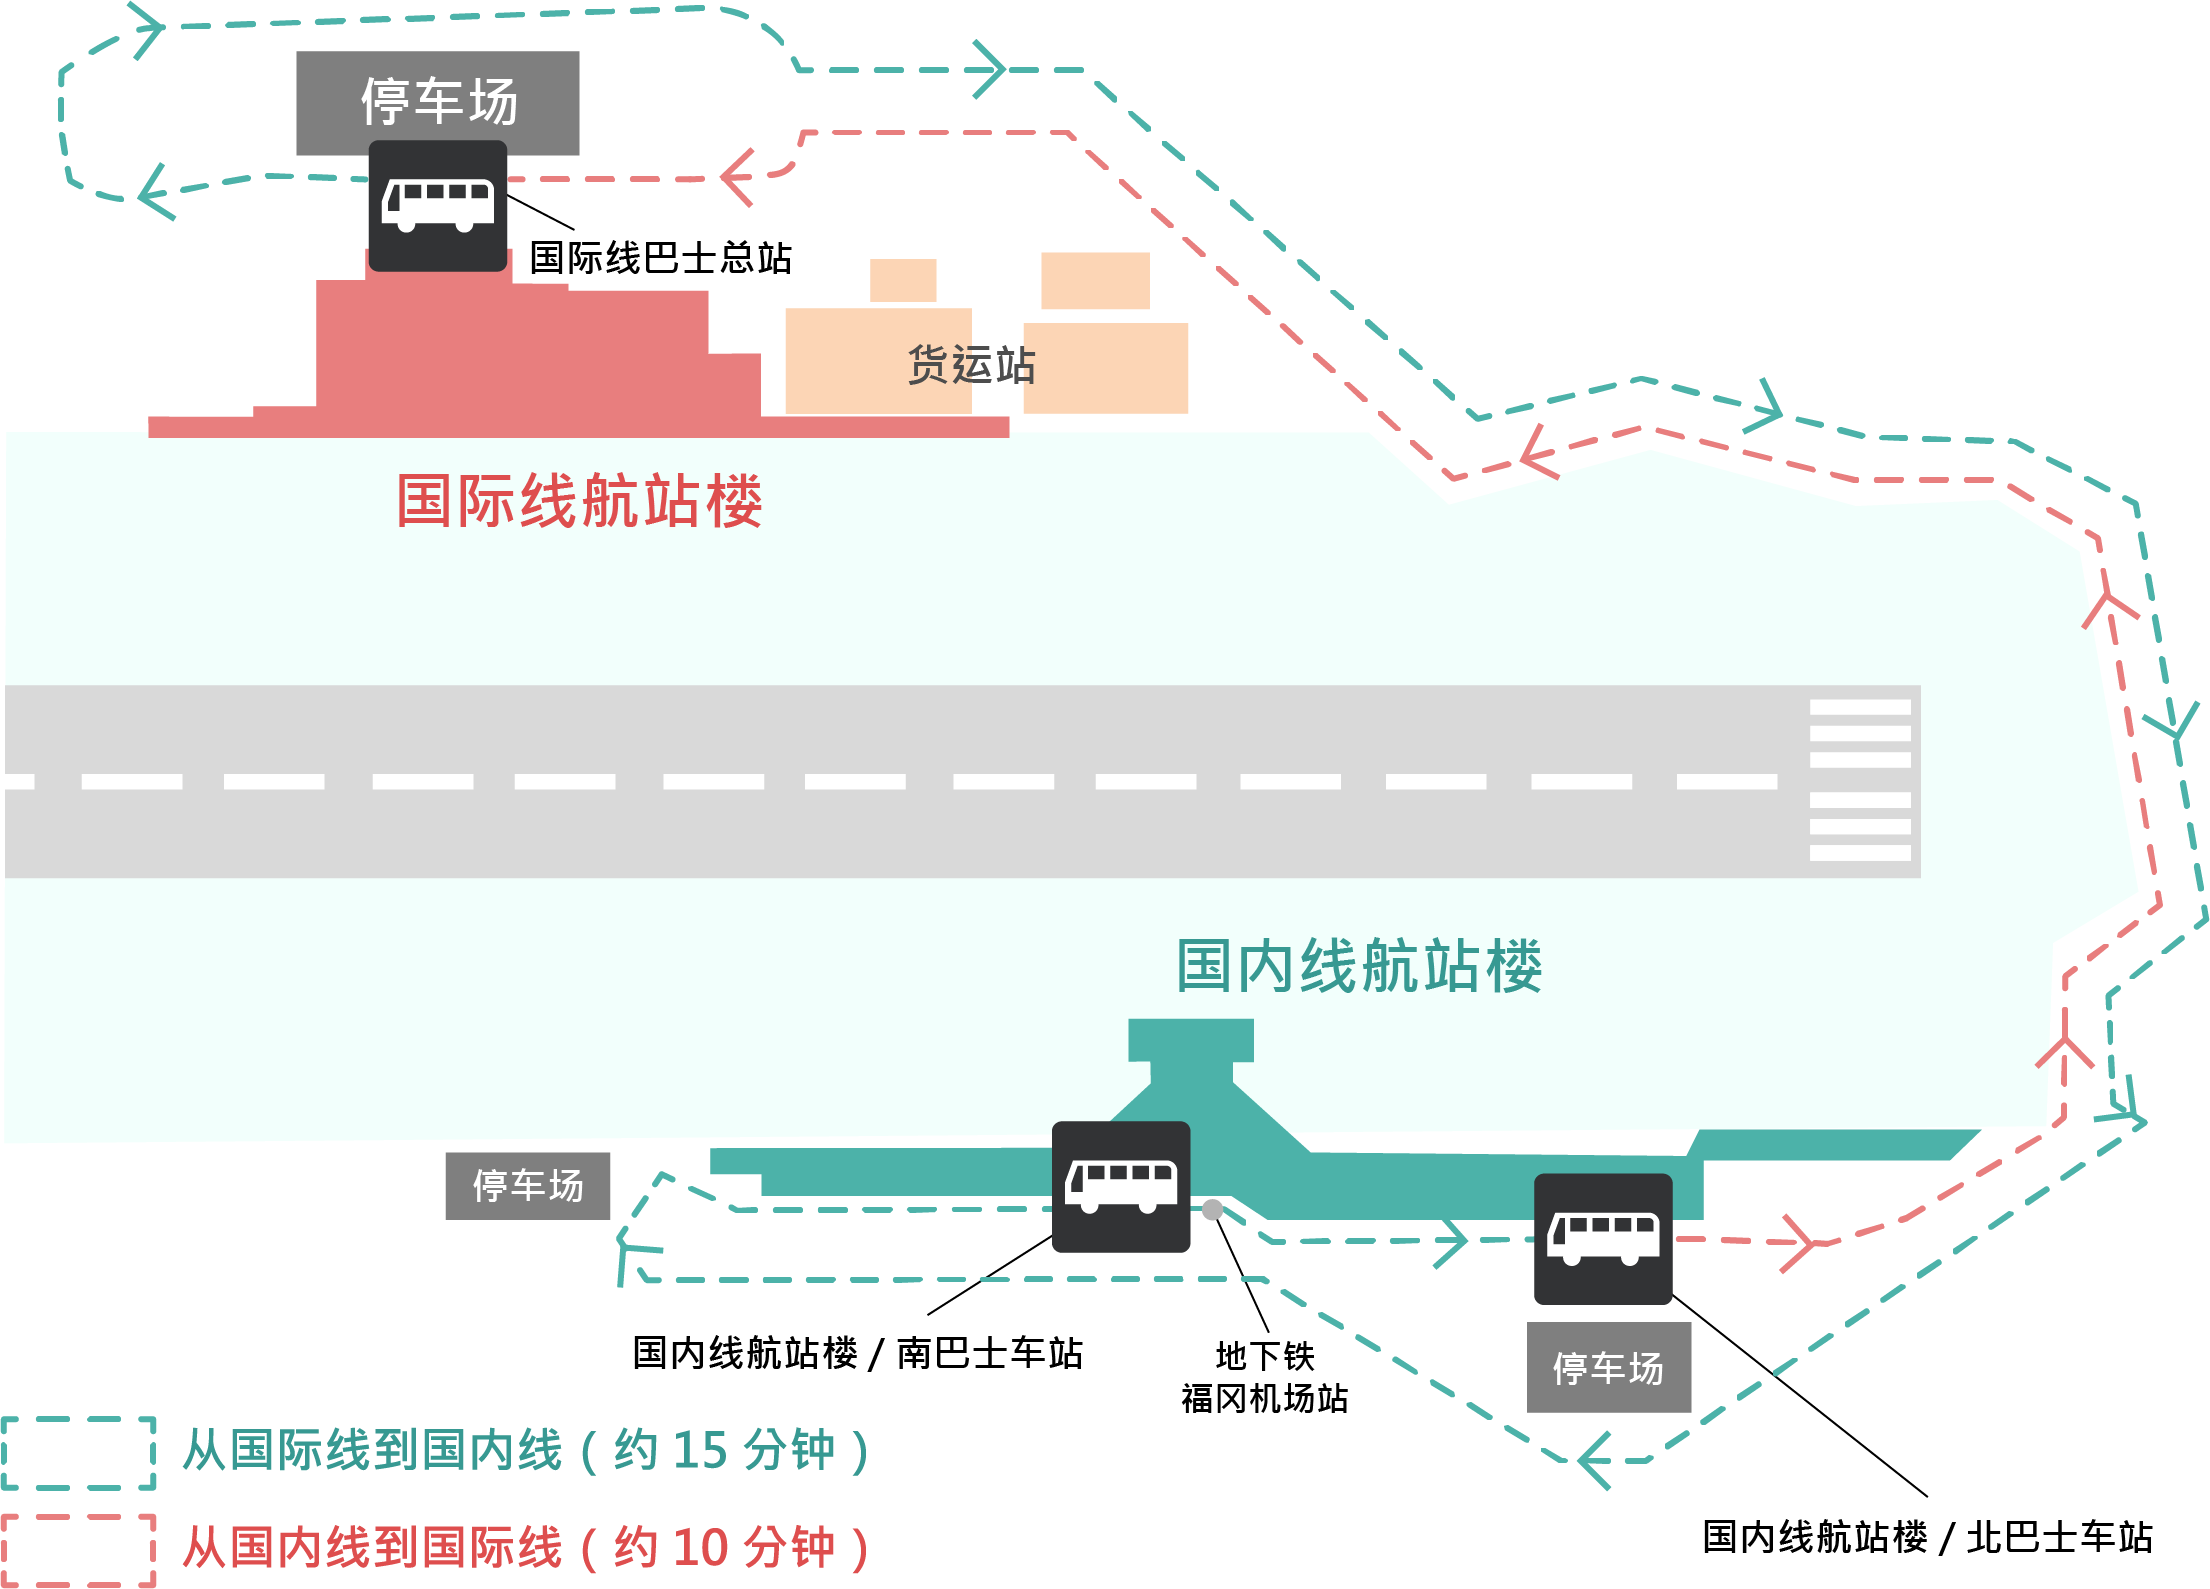 国内线・国际线接驳巴士运行路线图